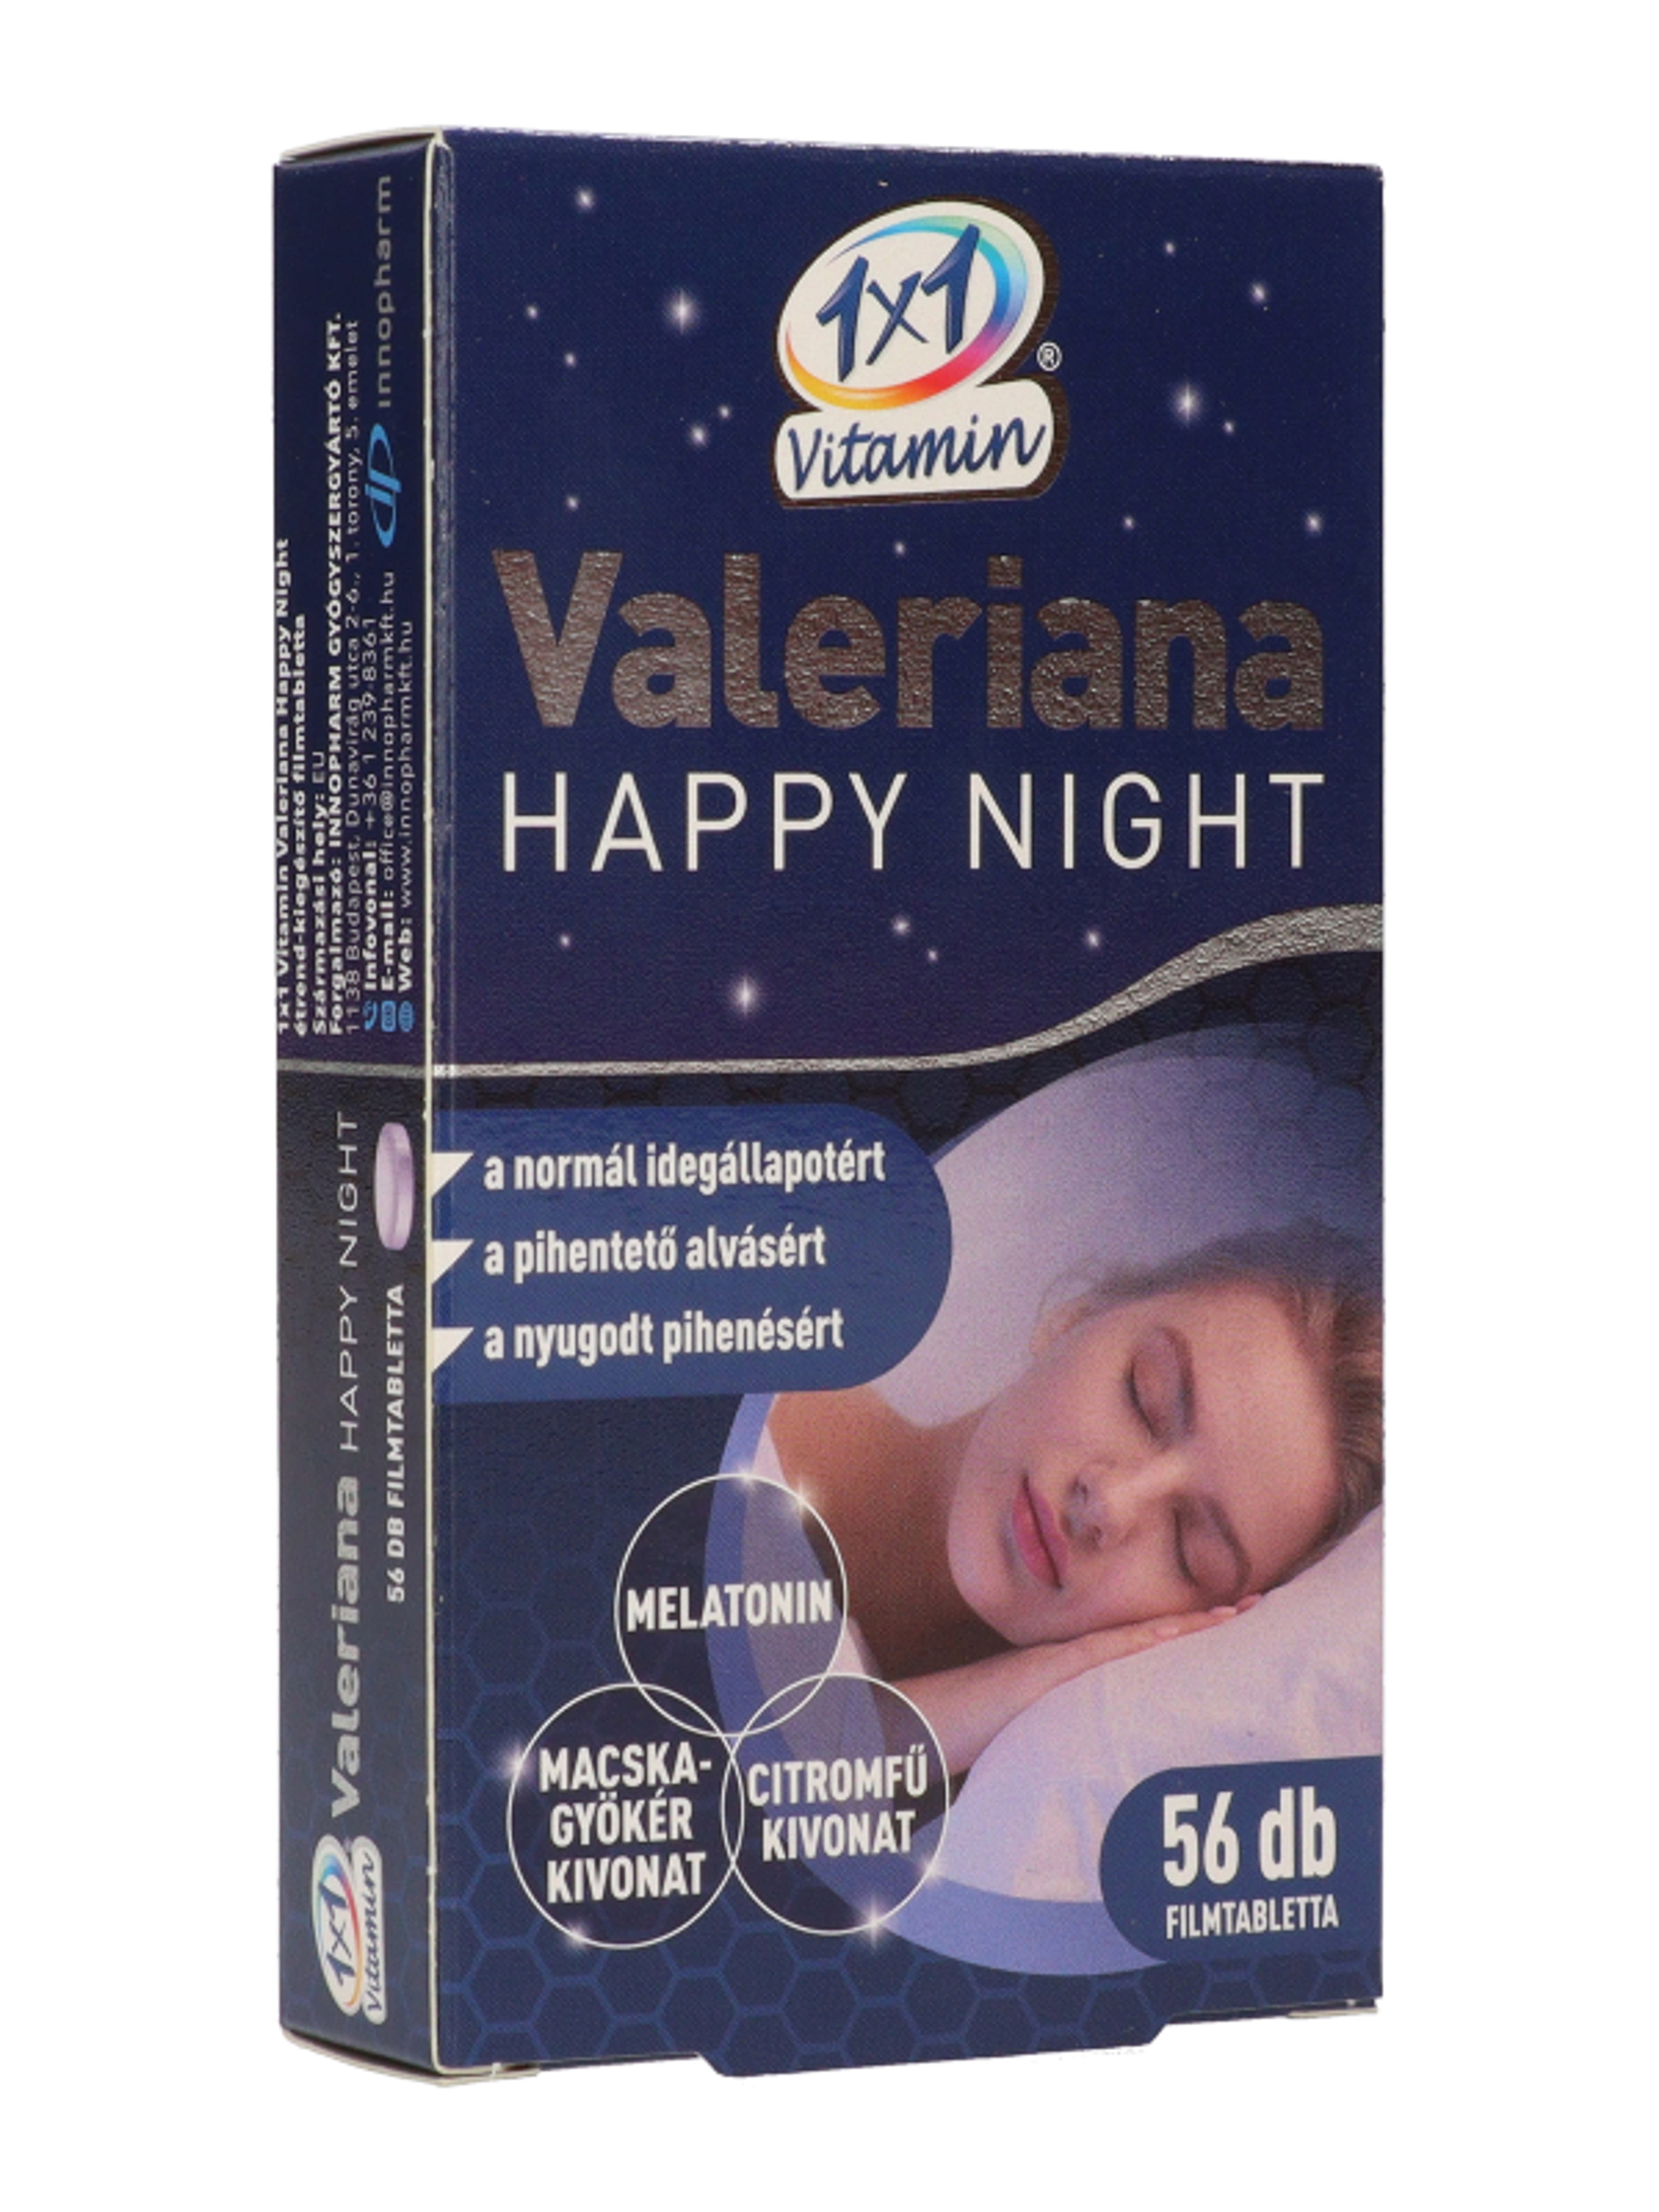 1x1 Vitamin Valeriana Happy Night filmtabletta - 56 db-5